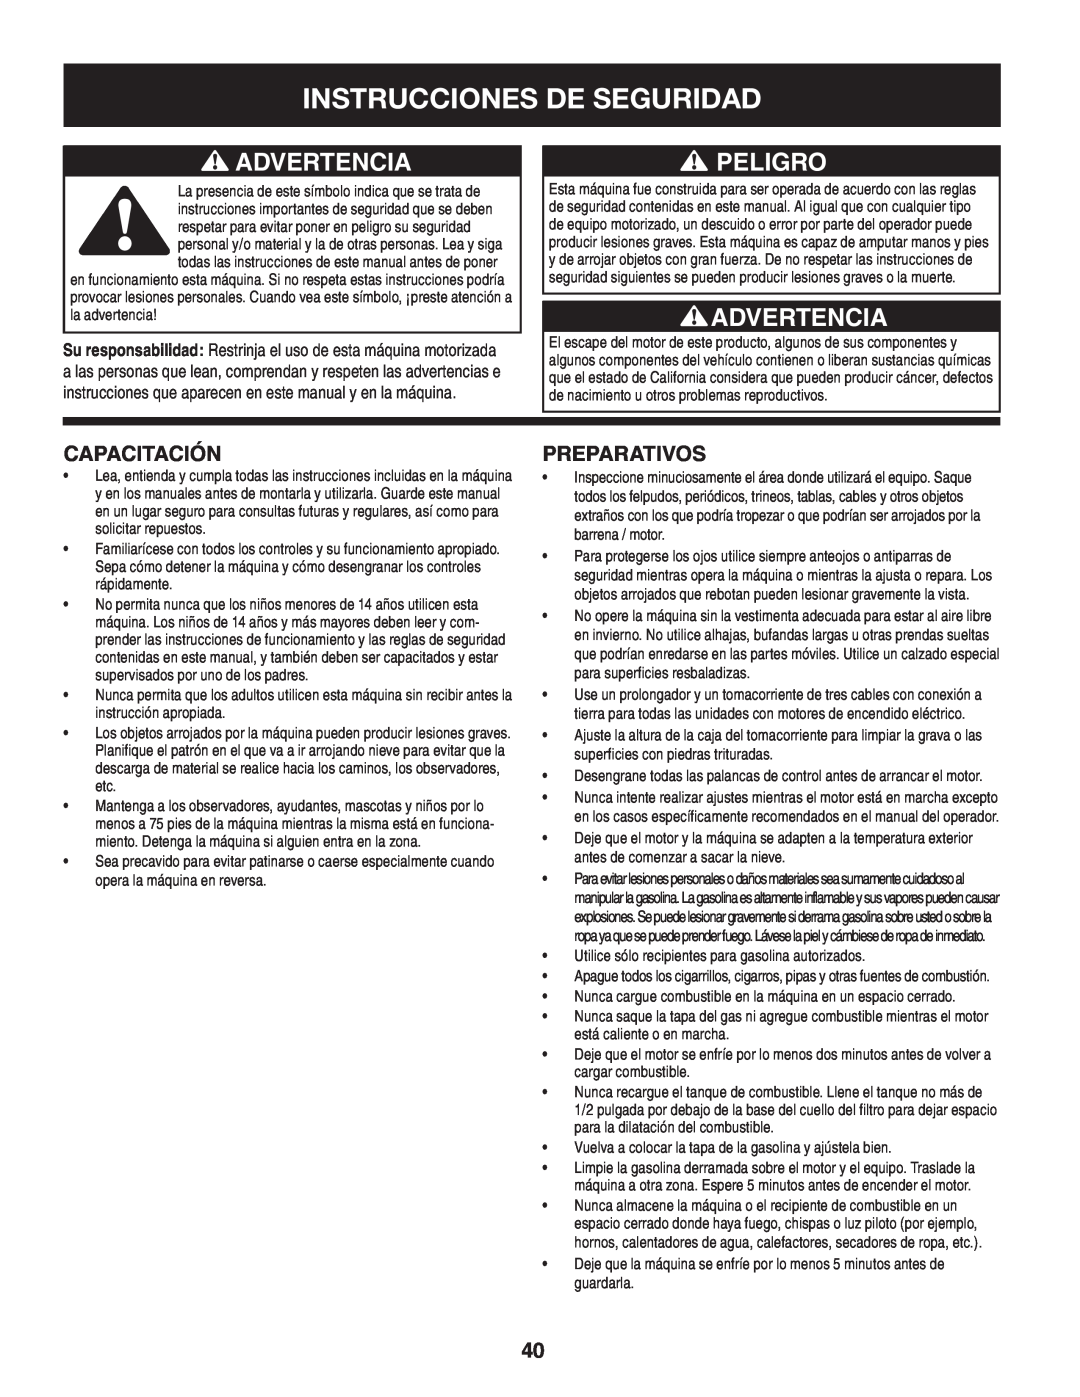 Craftsman 247.88045 manual Instrucciones De Seguridad, Advertencia, Peligro, Capacitación, Preparativos 